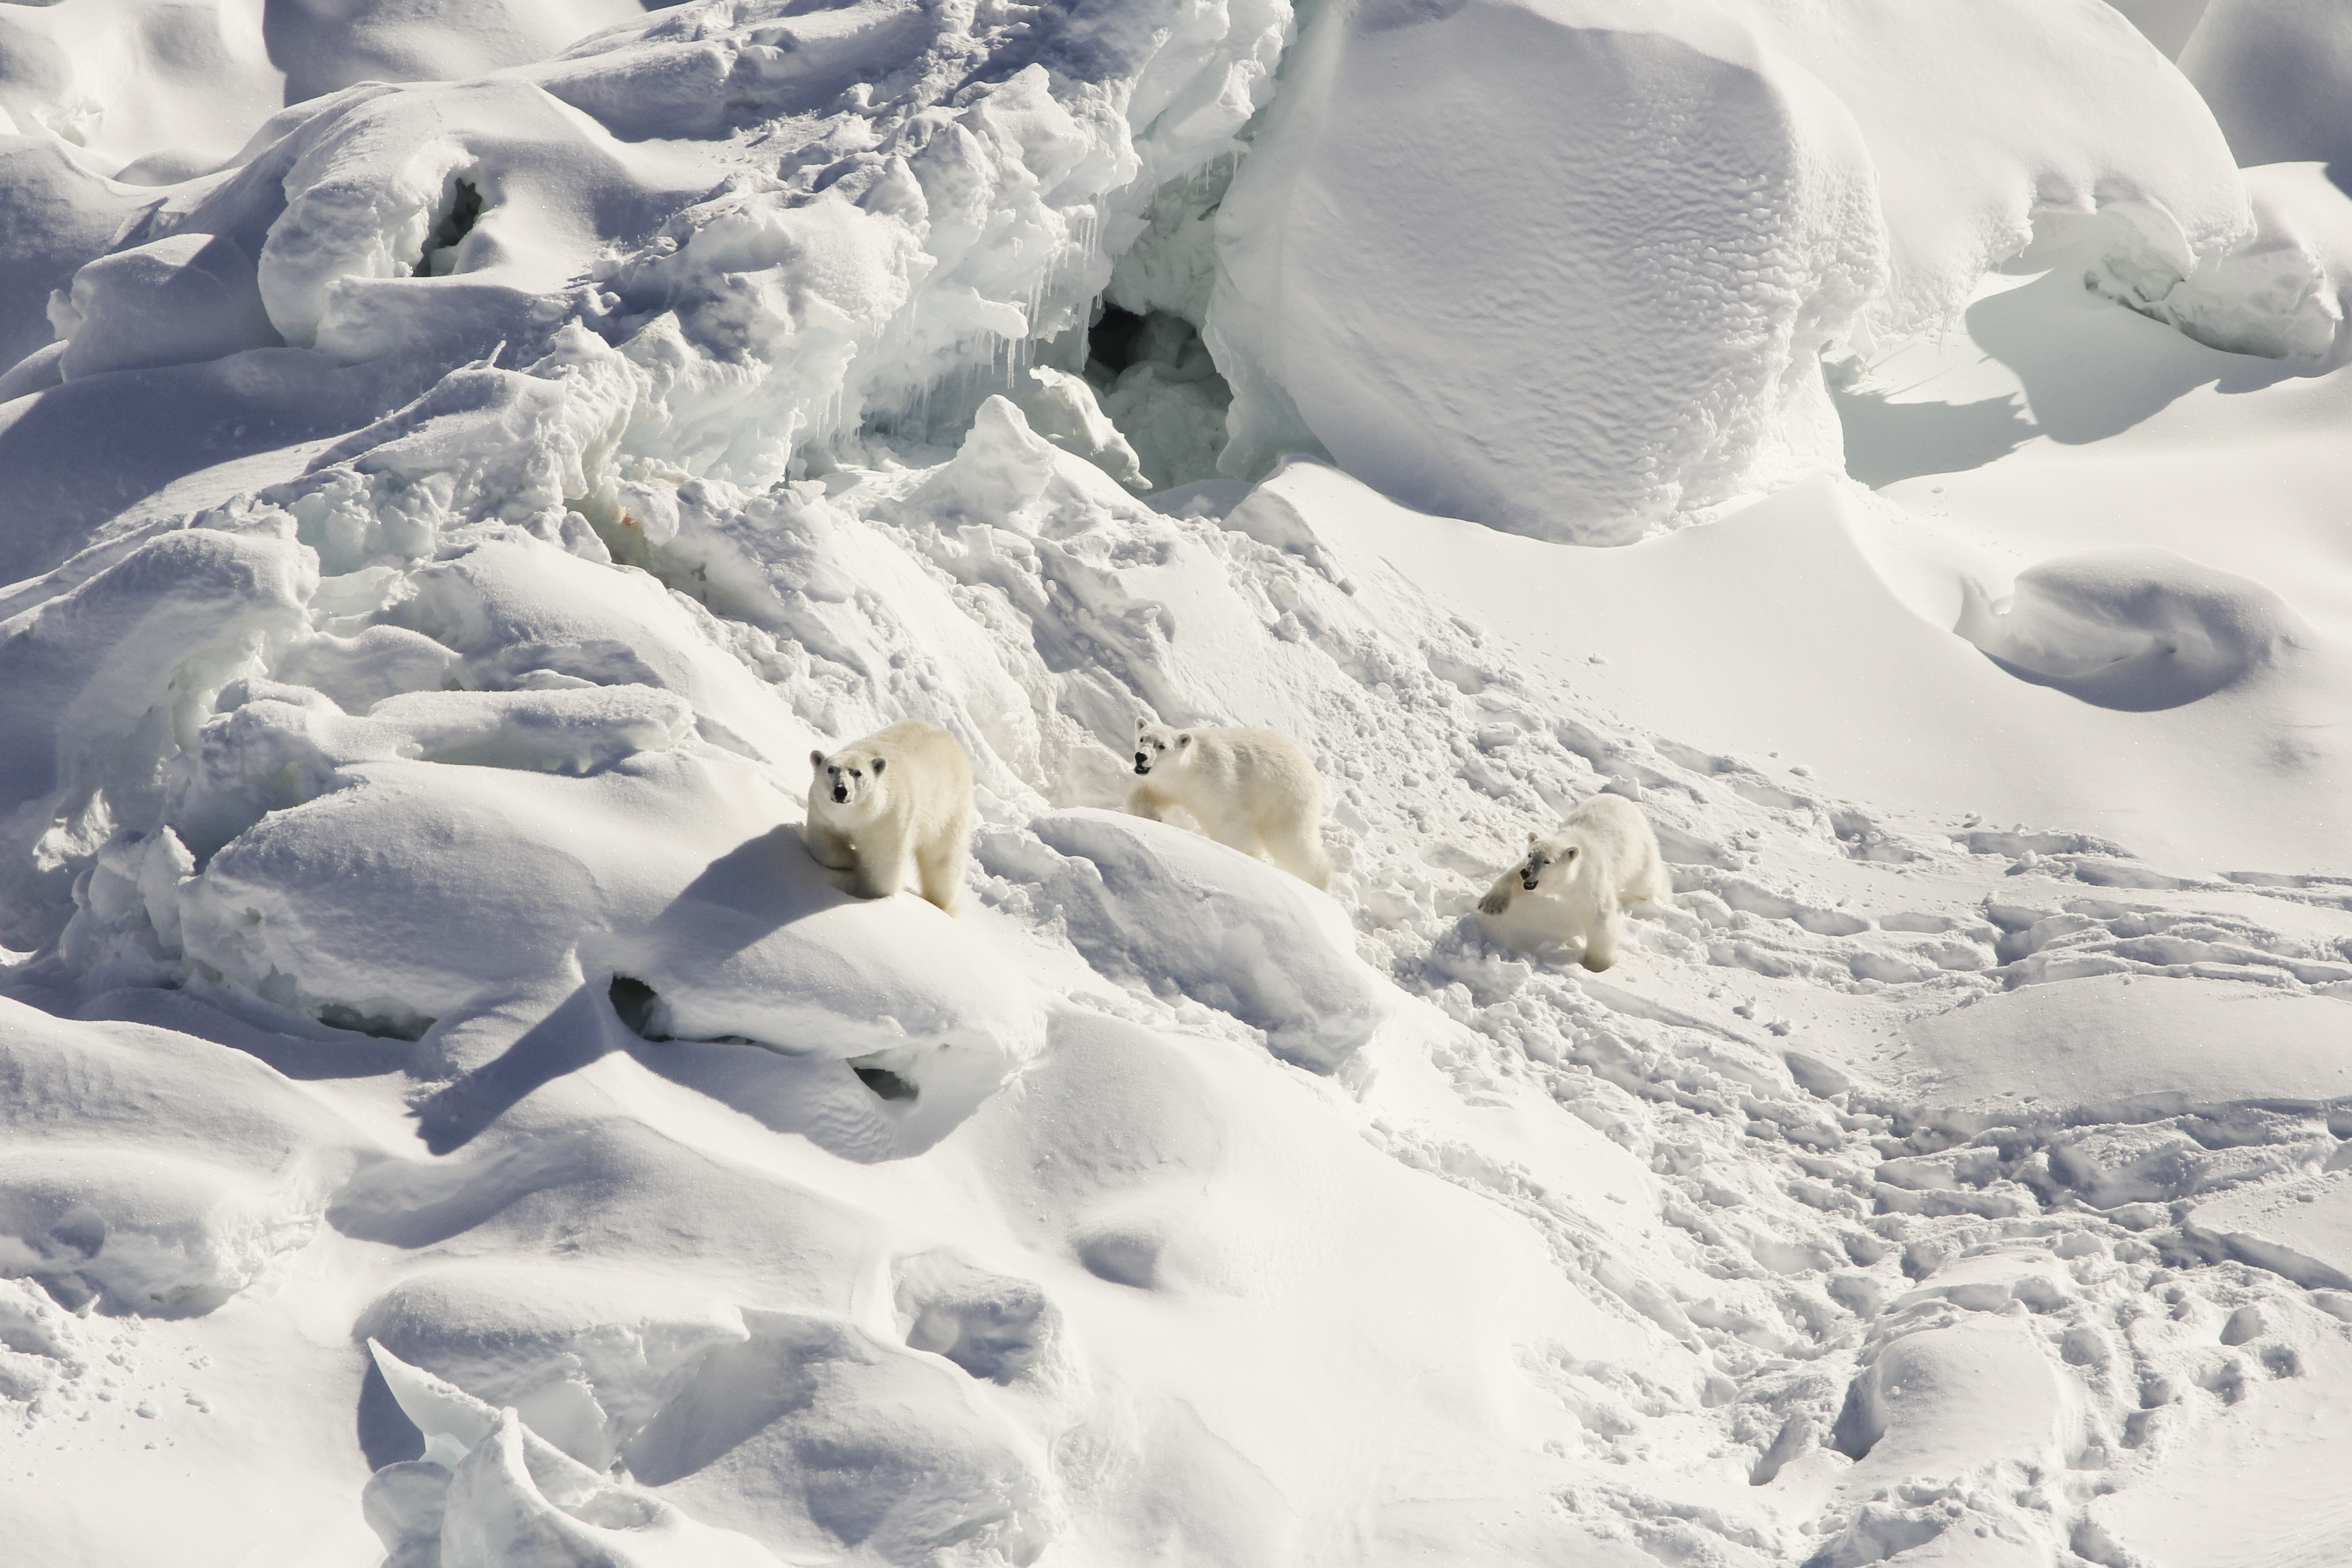 Una hembra adulta de oso polar, a la izquierda, y a sus cachorros de un año cruzando un glaciar de agua dulce en el sureste de Groenlandia en marzo de 2015. (Foto Prensa Libre: Kristin Laidre/Universidad de Washington vía The New York Times)